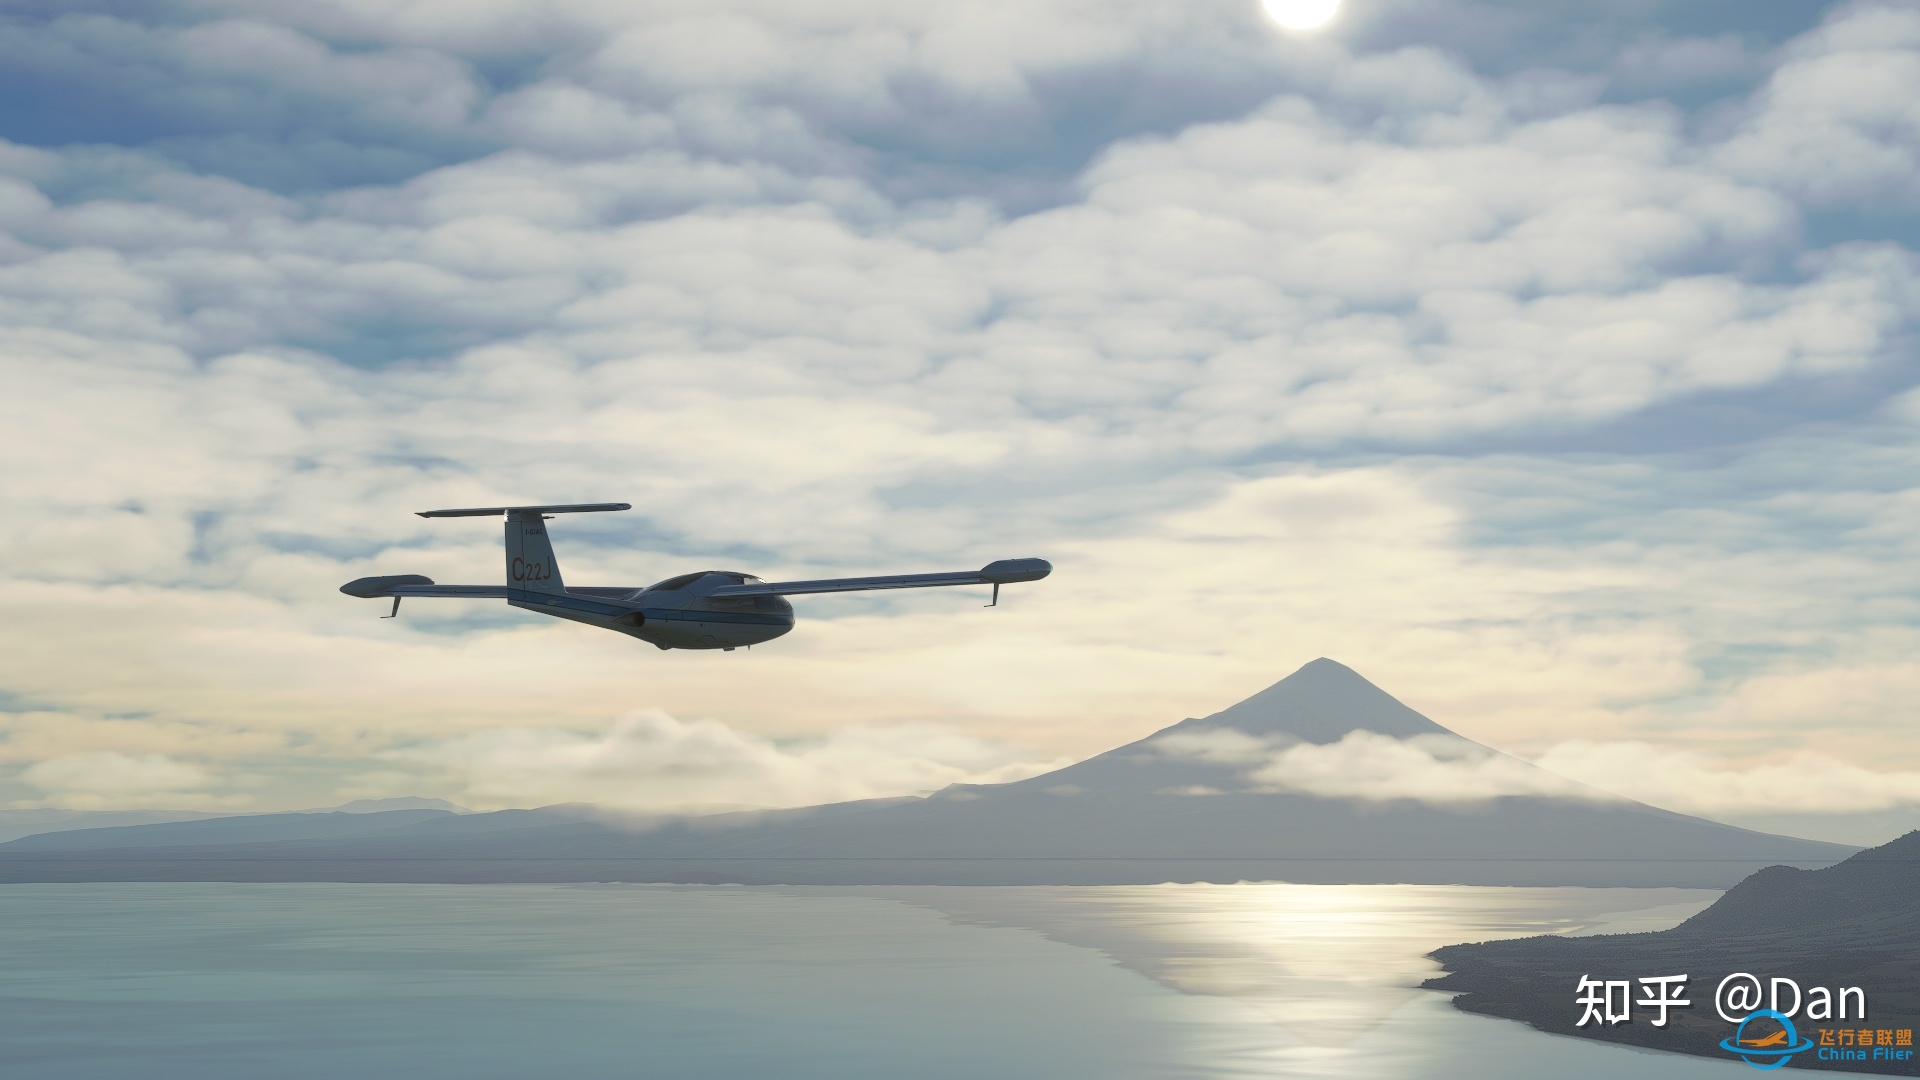 飞行模拟游戏《微软飞行模拟2020》实际体验如何？-6981 